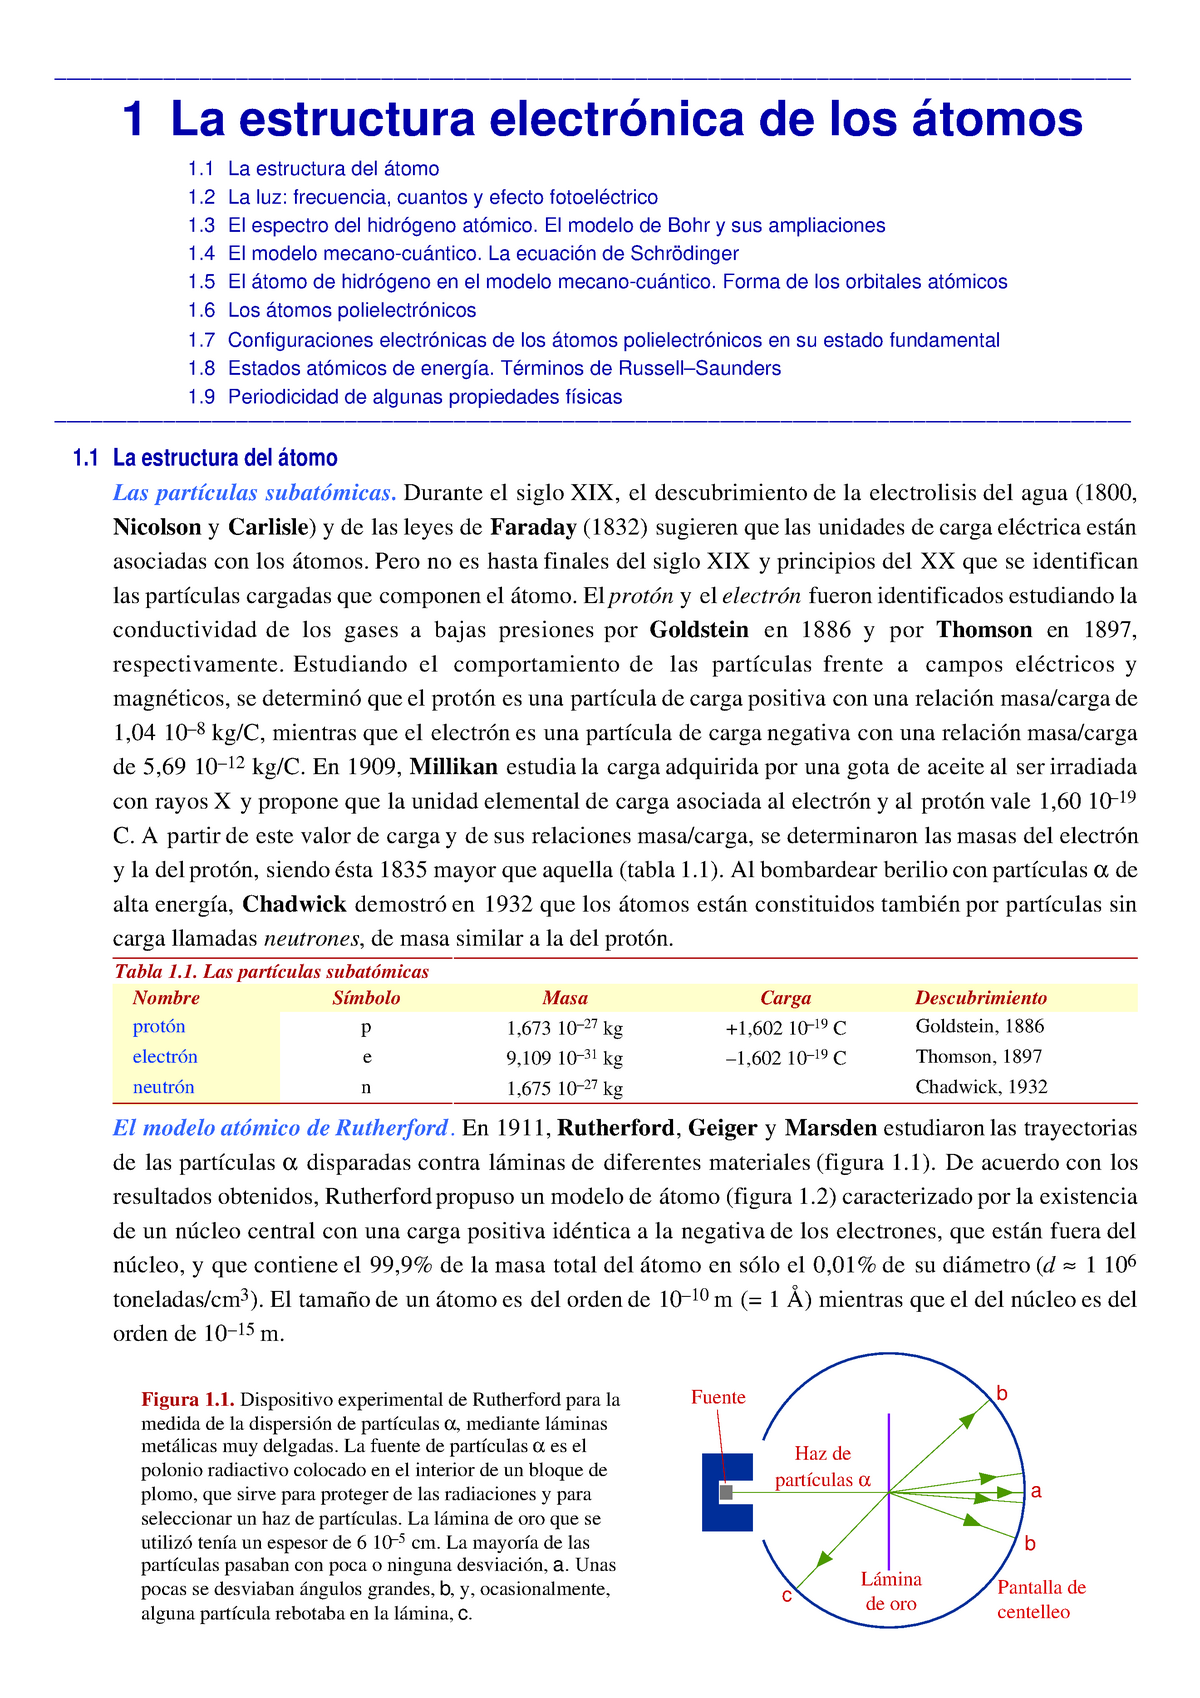 Estructura electrónica de los átomos - El modelo de Bohr y sus ampliaciones  1 El modelo - Studocu